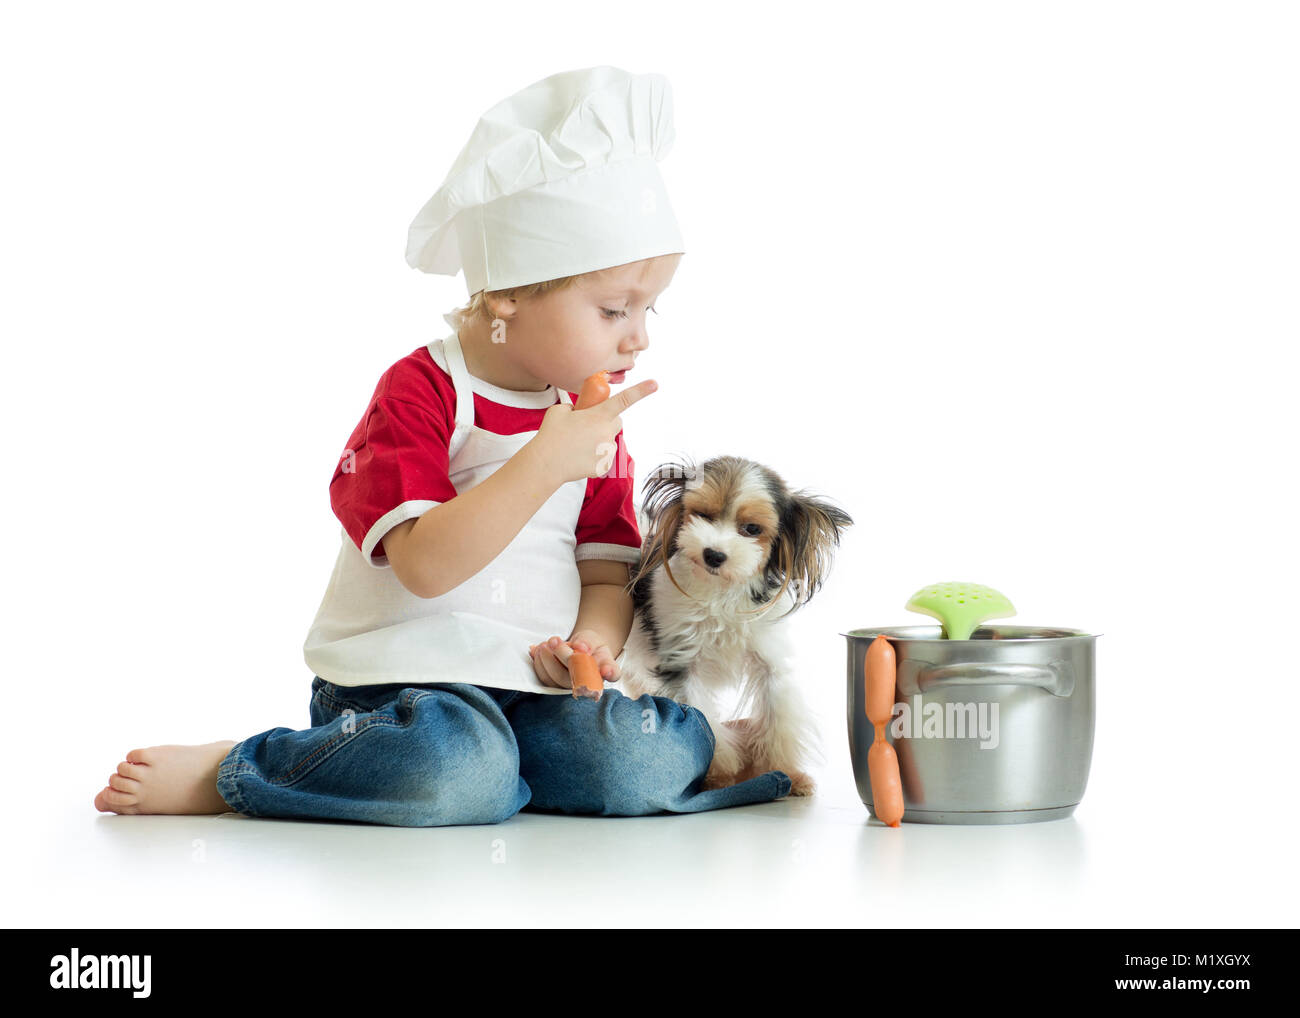 Carino kid boy vestito cuocere gioca con divertenti cani isolato Foto Stock